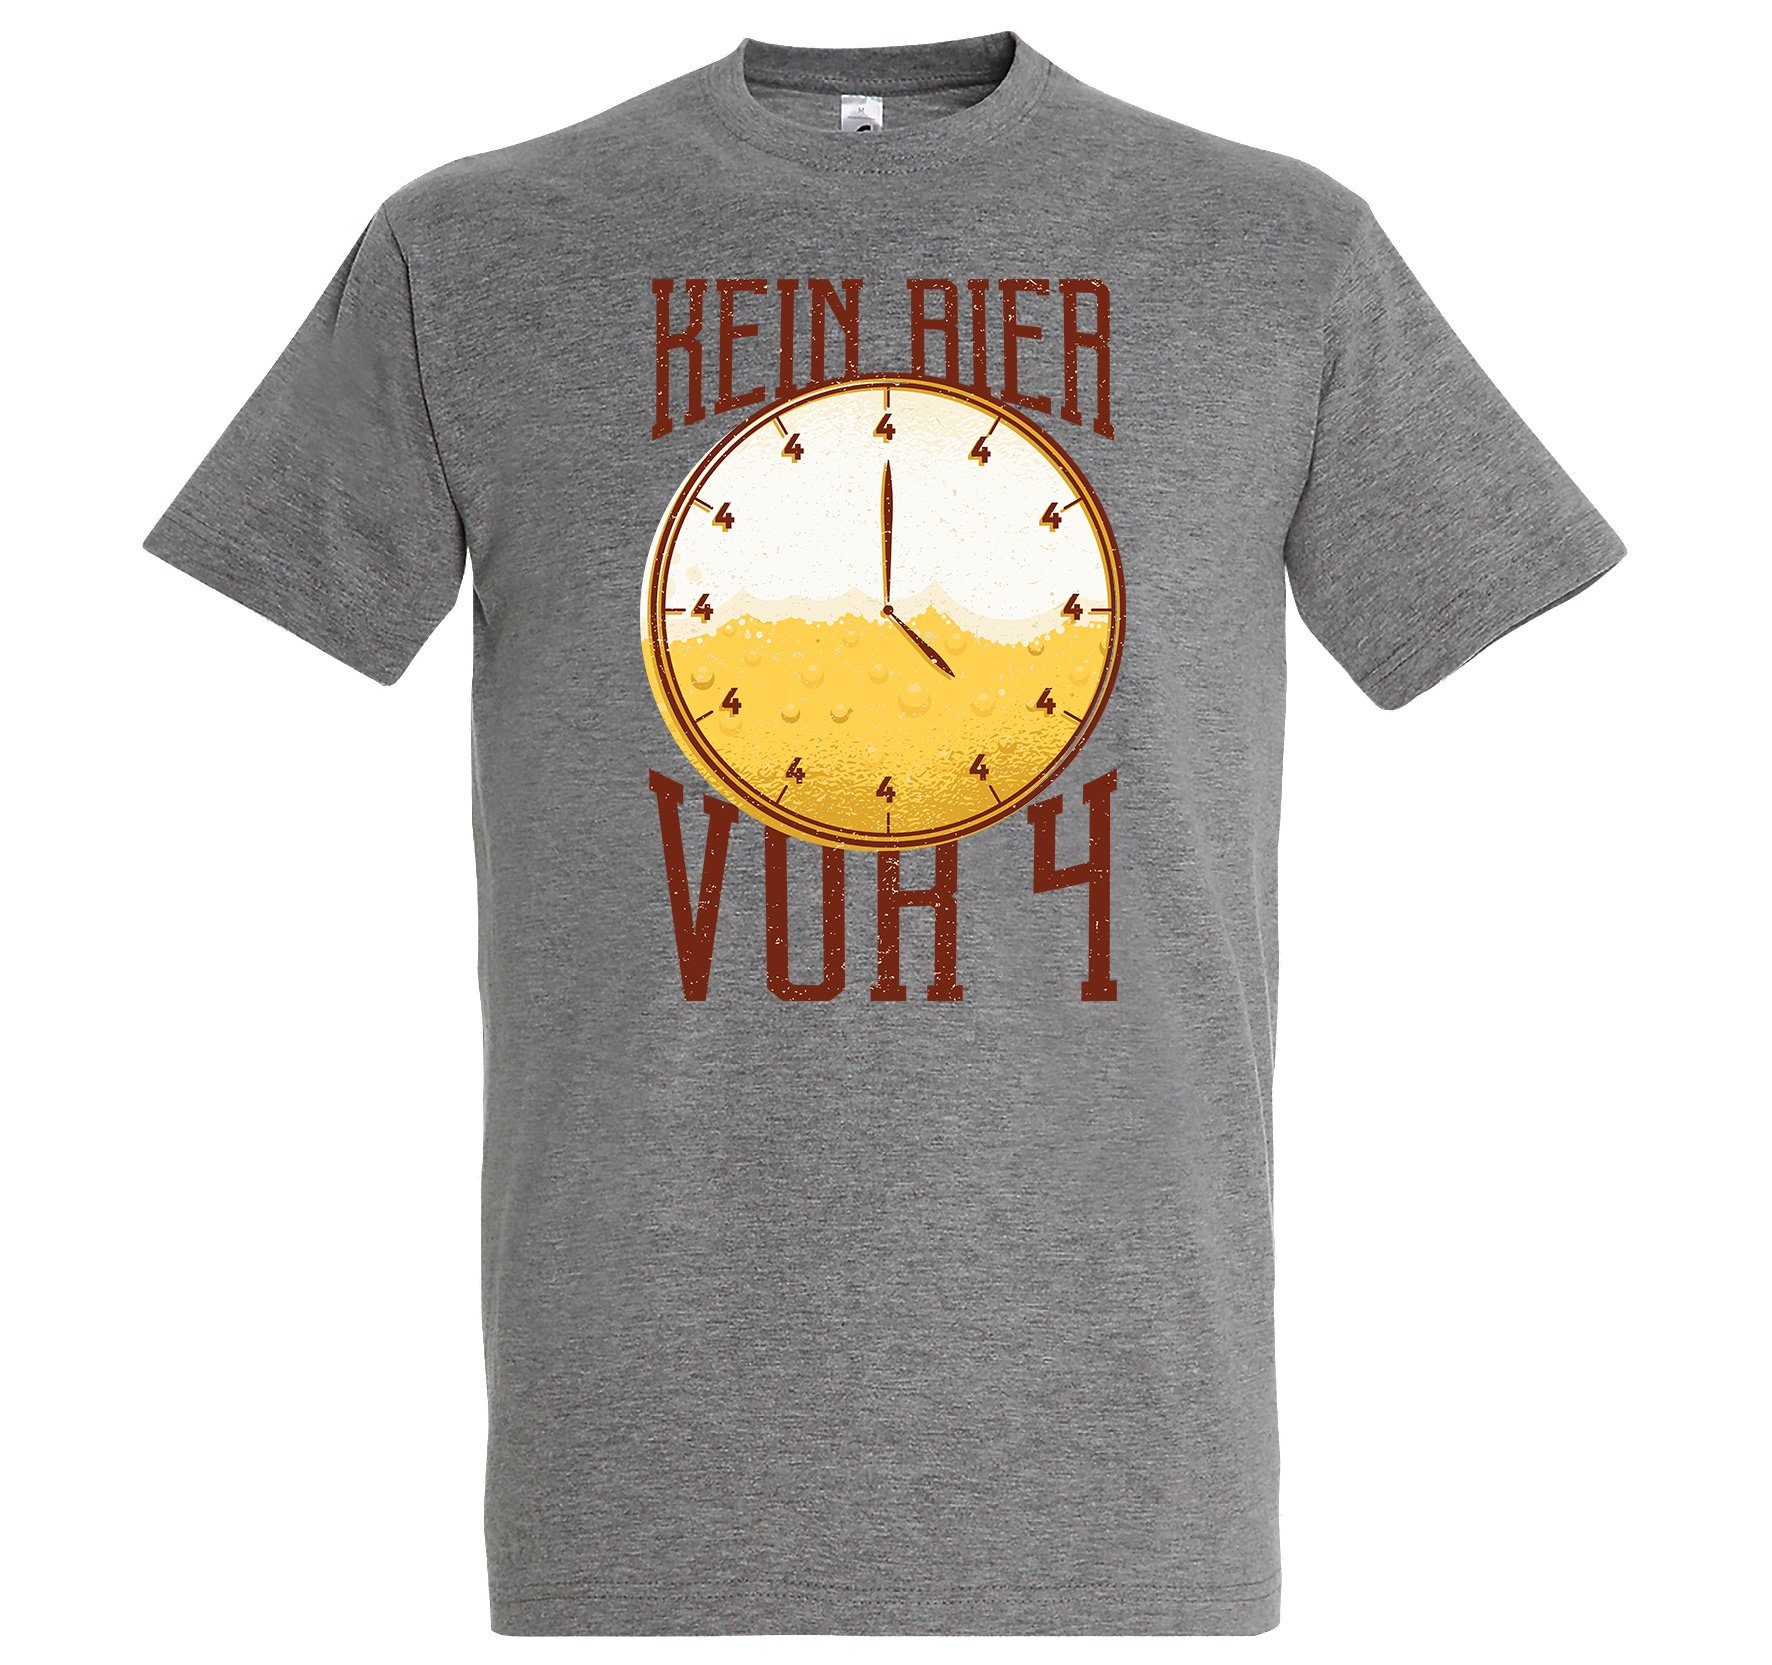 Youth Designz T-Shirt BierVor4 Herren Shirt mit lustigem Spruch Grau